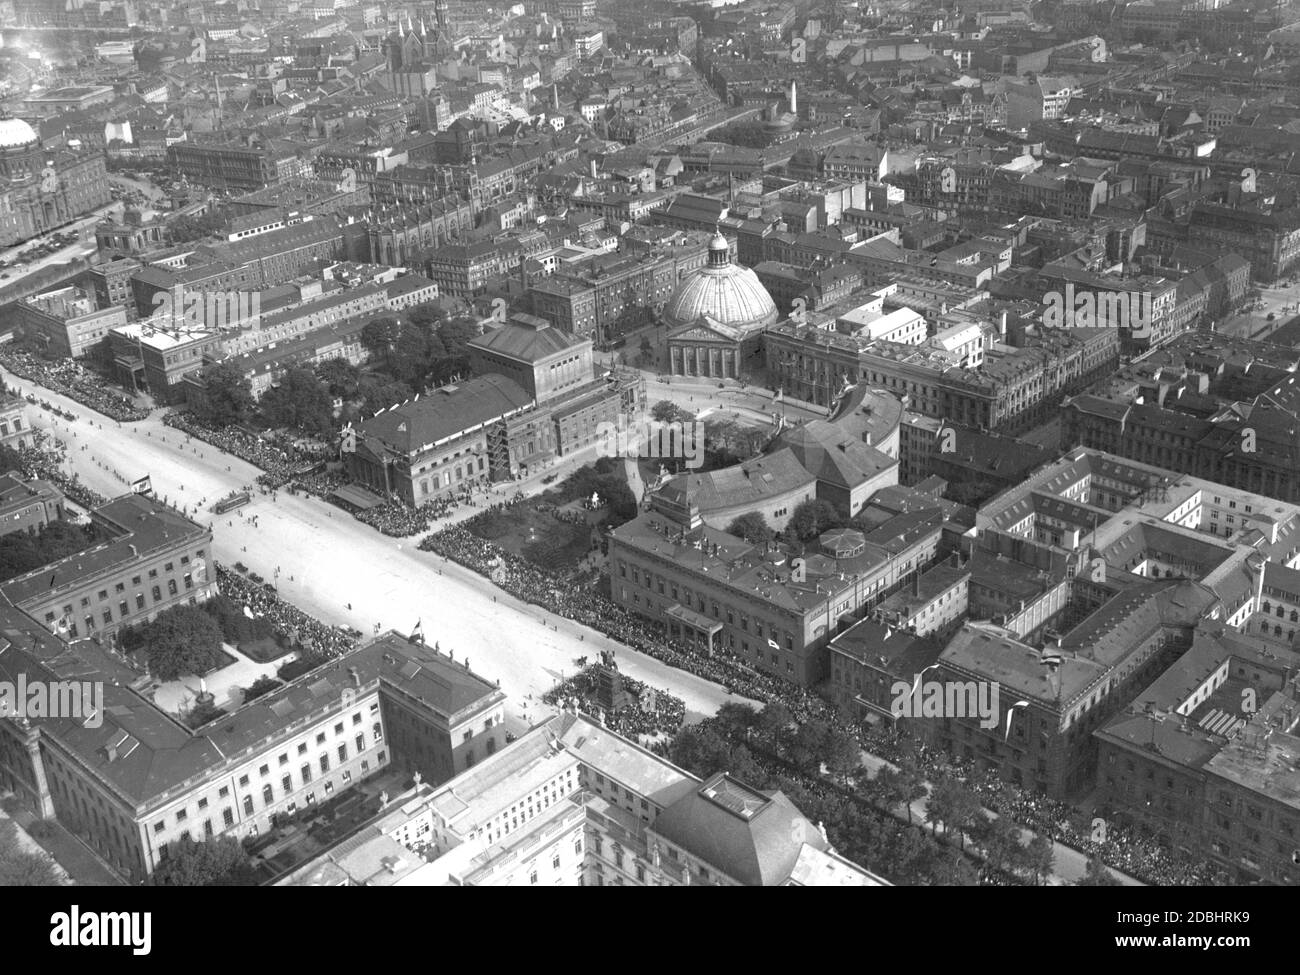 La fotografia aerea del 1926 mostra il viale Unter den Linden con la Neue Wache, l'Università Humboldt e la Biblioteca di Stato di Berlino-Mitte. Si sta svolgendo una sfilata e molte persone la stanno guardando. Al centro della foto si trova la Cattedrale di Sant'Edvige a Bebelplatz e l'Opera di Stato. Foto Stock